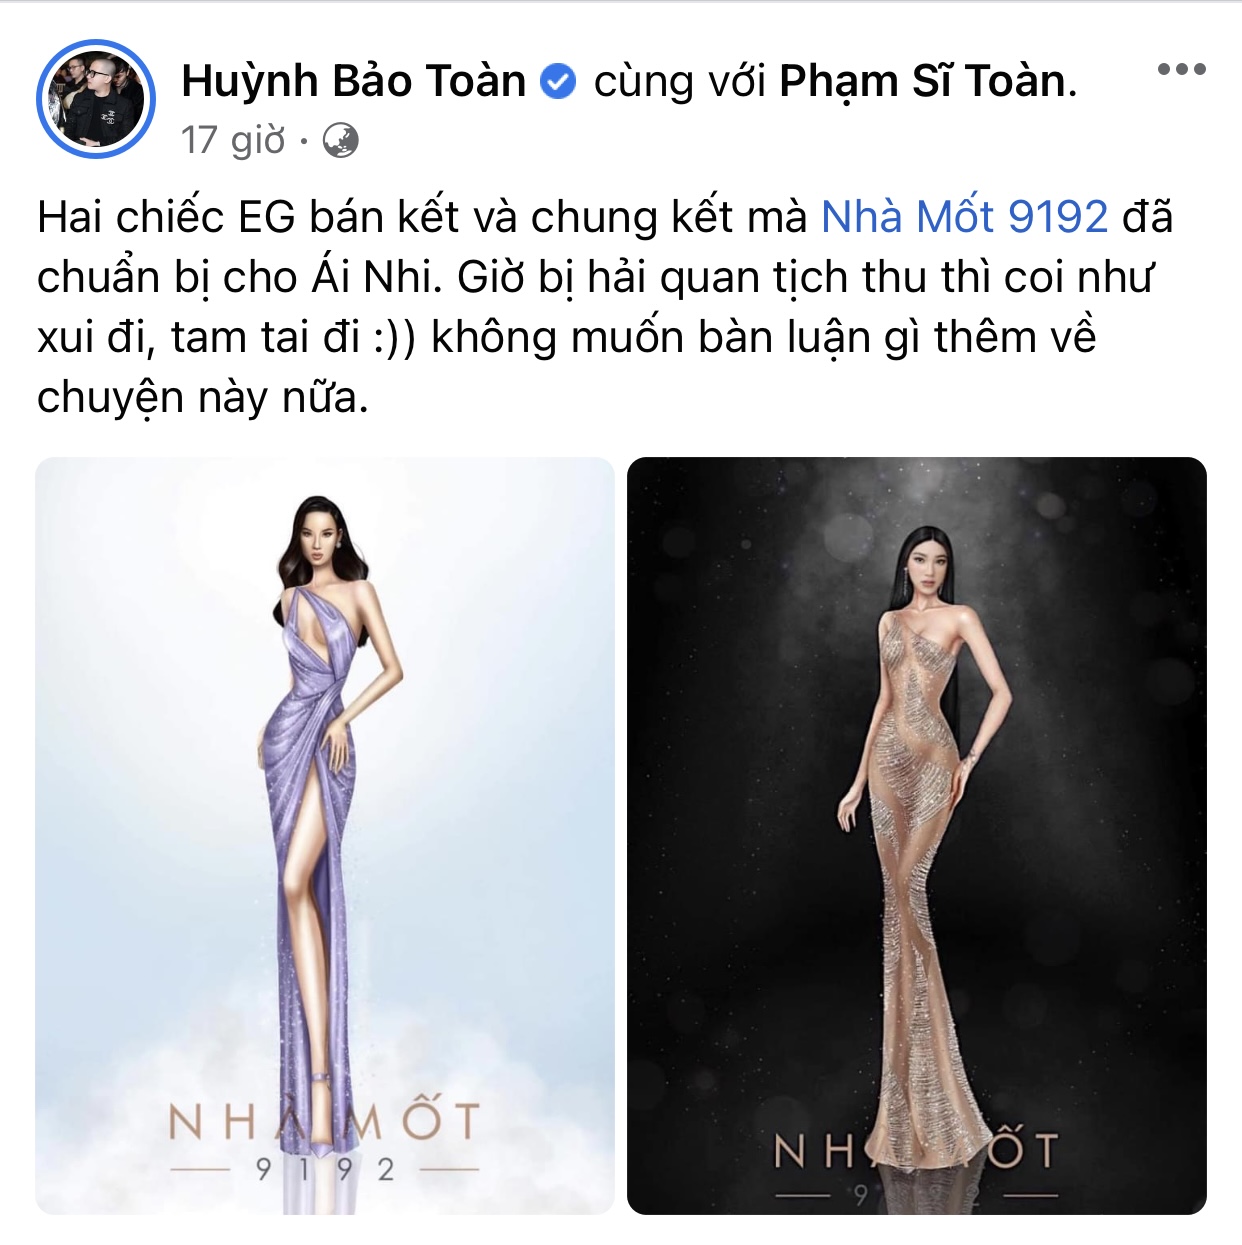 2 bản vẽ trang phục trong đêm Chung kết và Bán kết được NTK Huỳnh Bảo Toàn chia sẻ trước đó